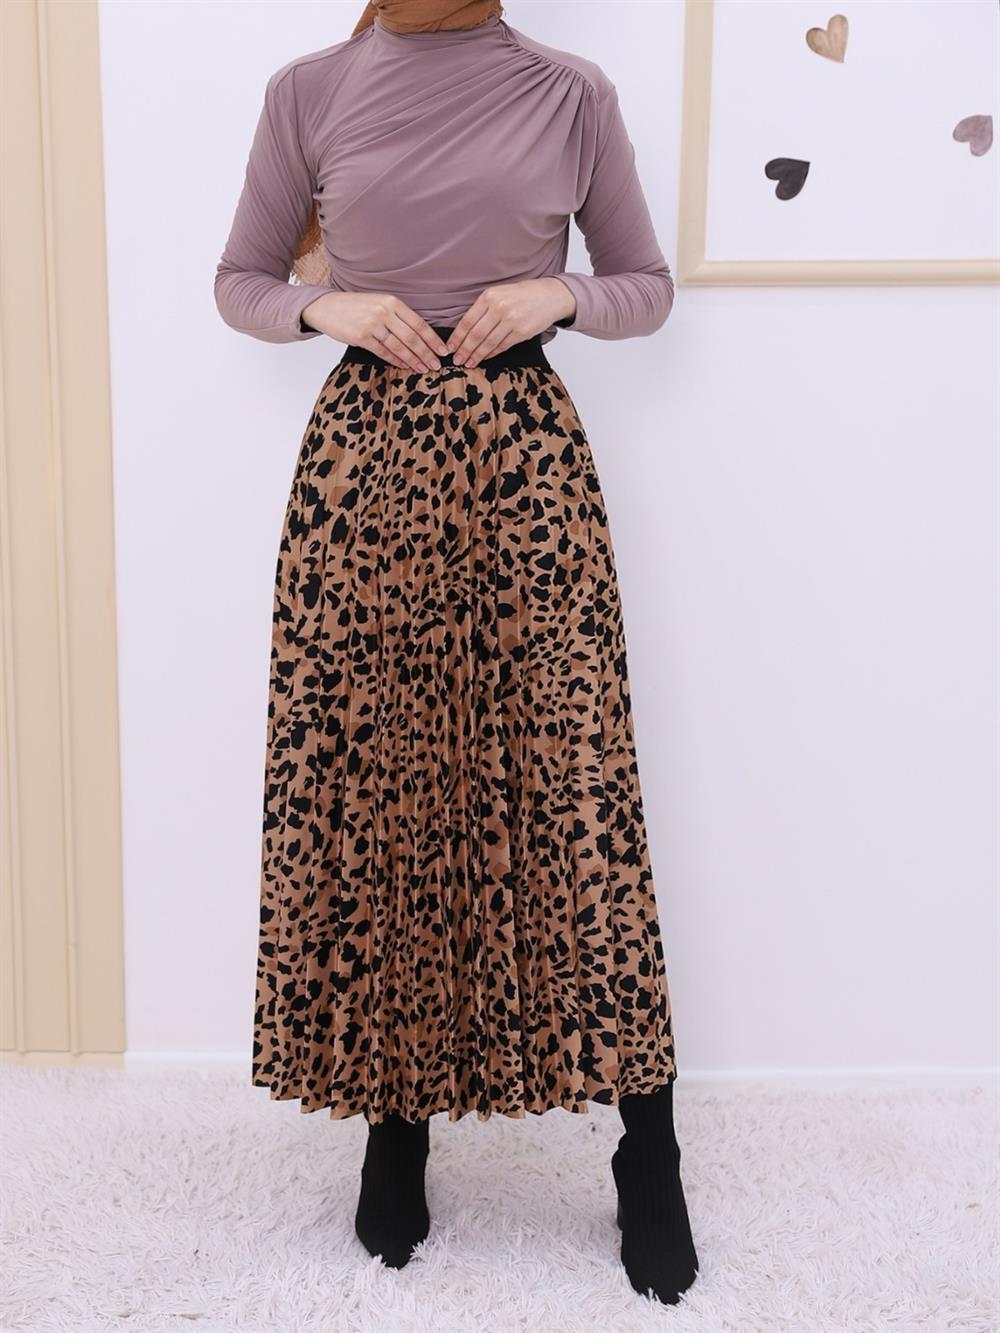 Leopar Desen Pliseli Etek -Vizon - 207-6440-R23 | SAGA Marka Etek Modelleri  | Kadın Tesettür Giyim - KaliteMall.com